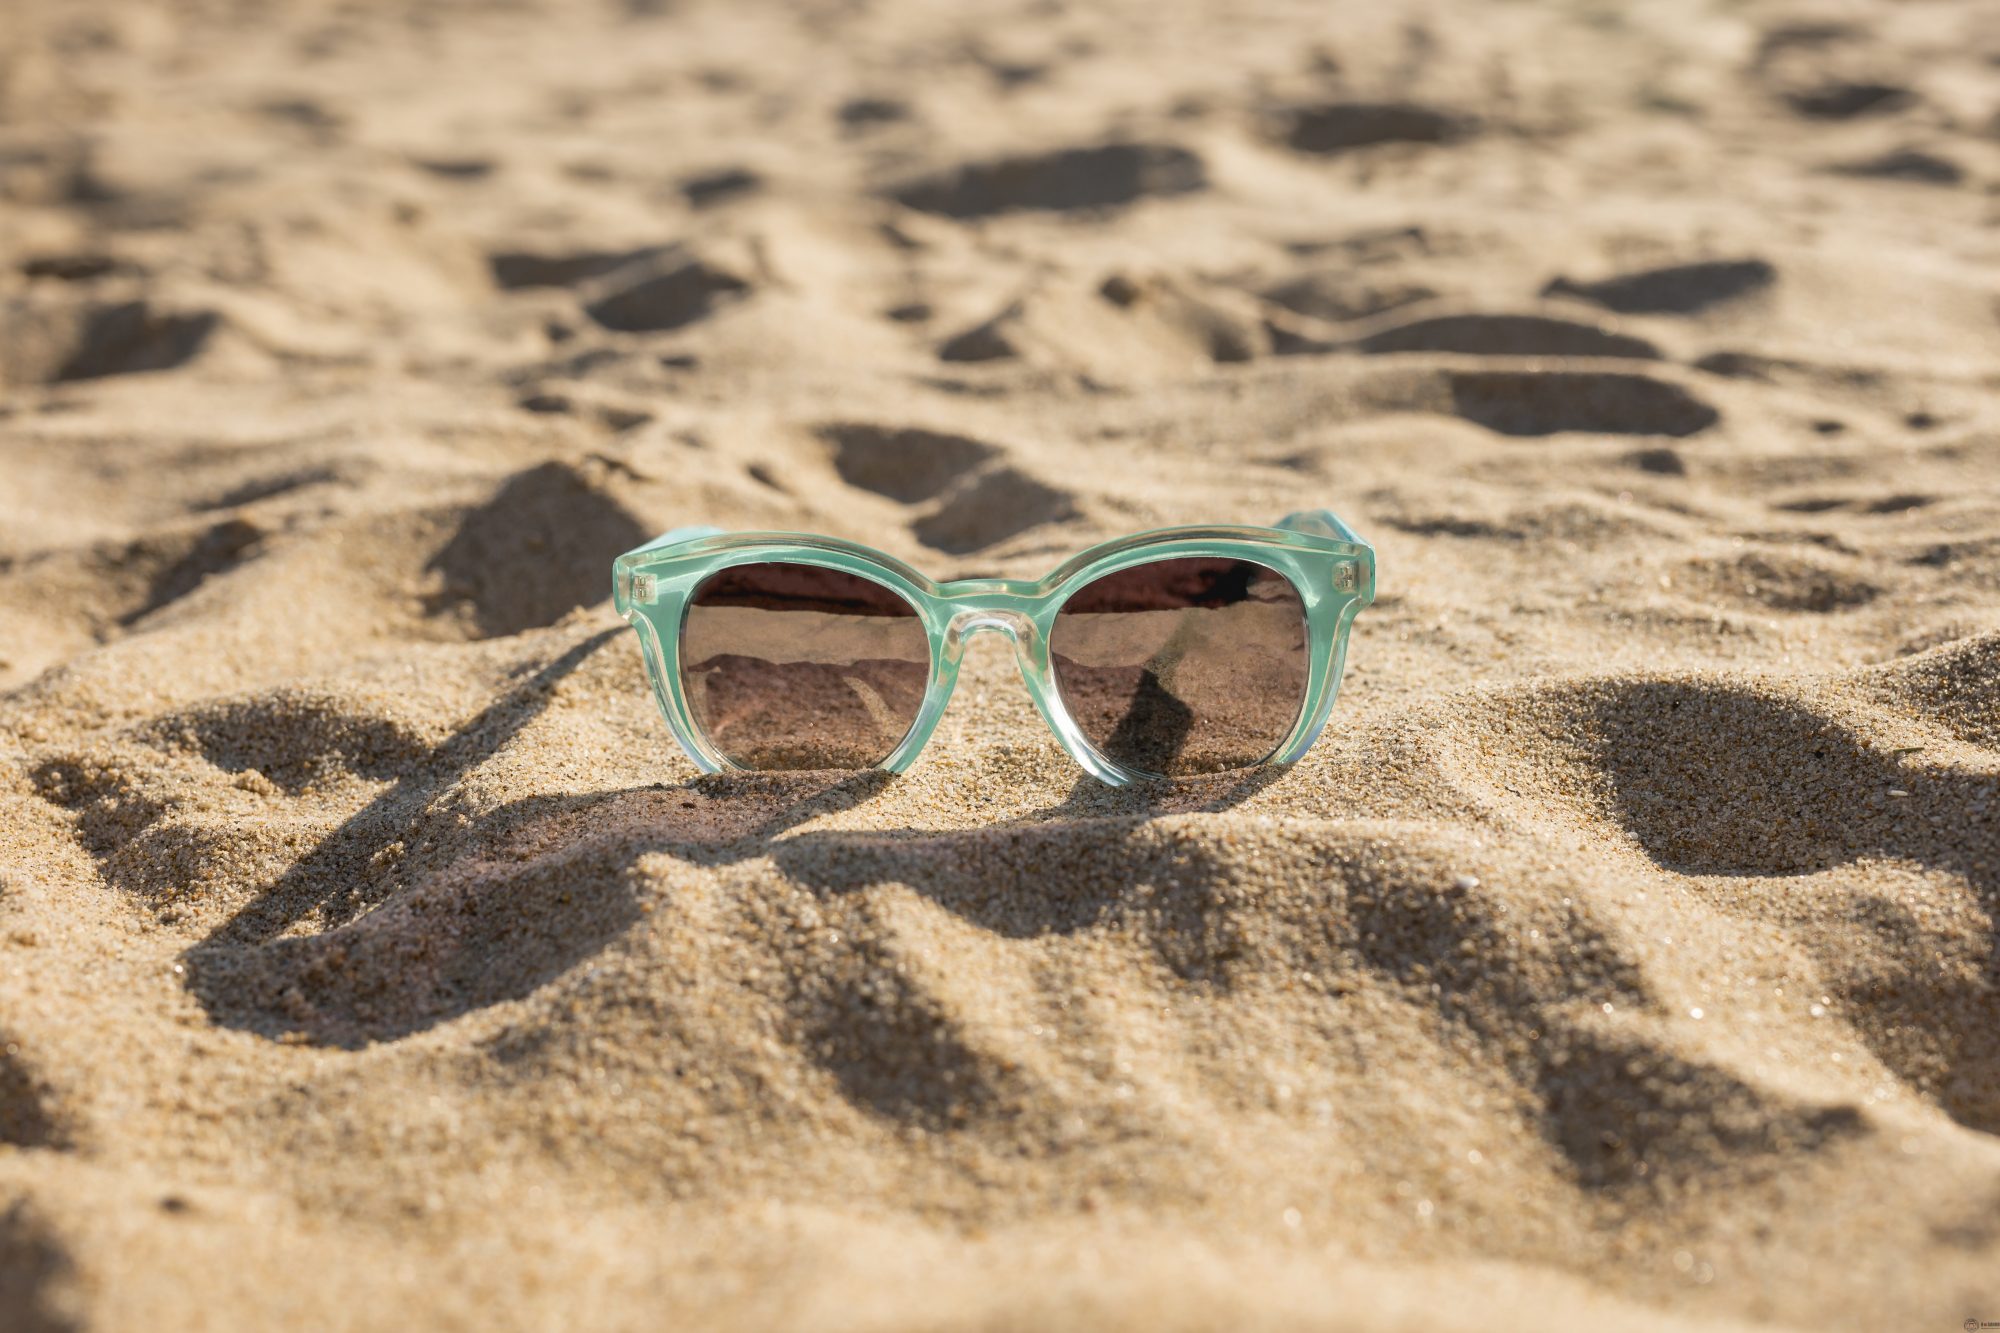 Пляж песок очки